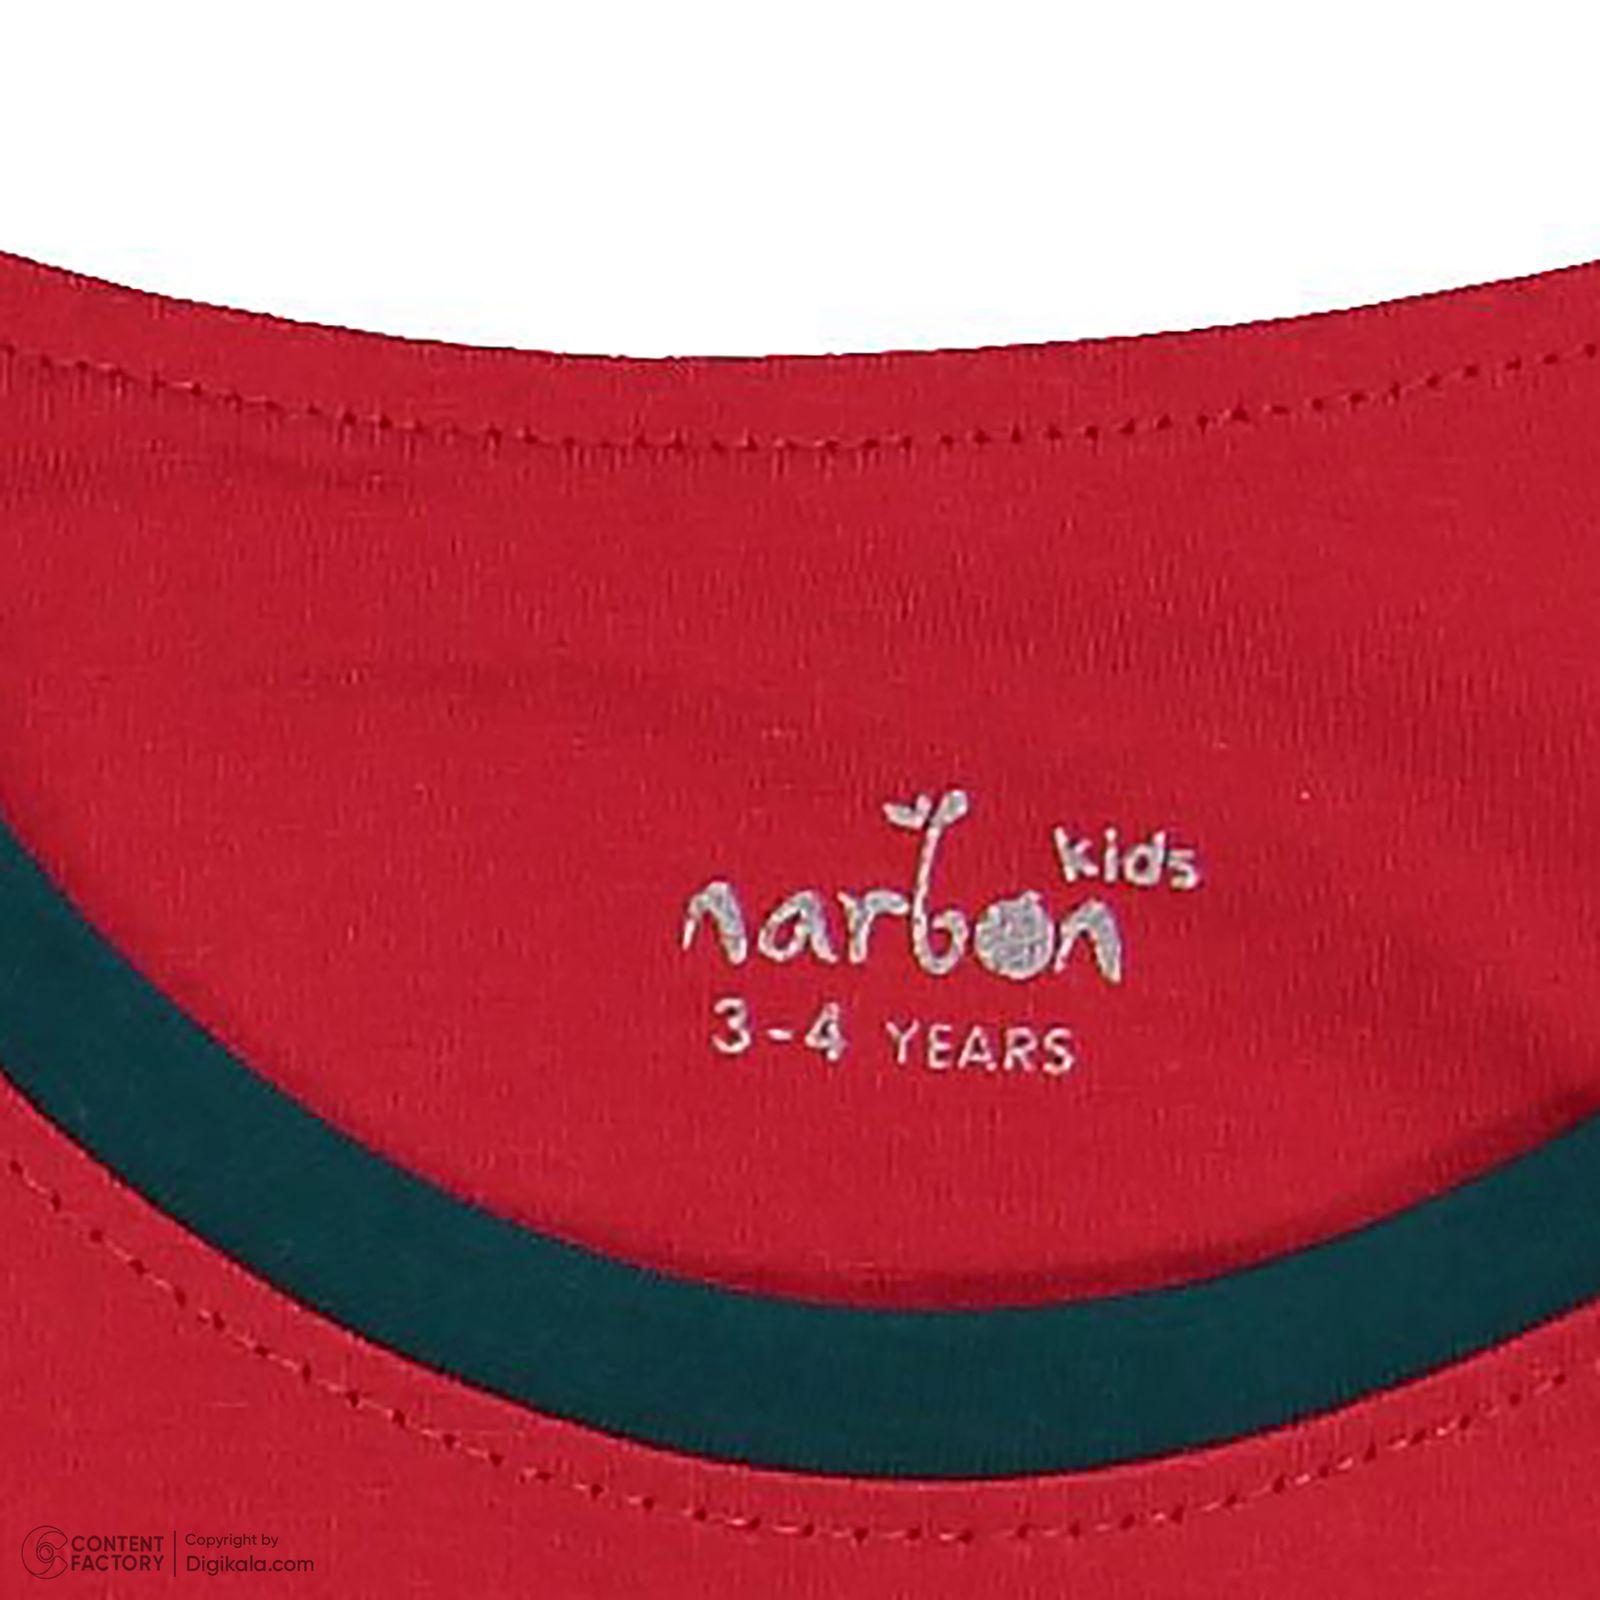 ست تی شرت و شلوار بچگانه ناربن مدل 1521490 رنگ قرمز -  - 7